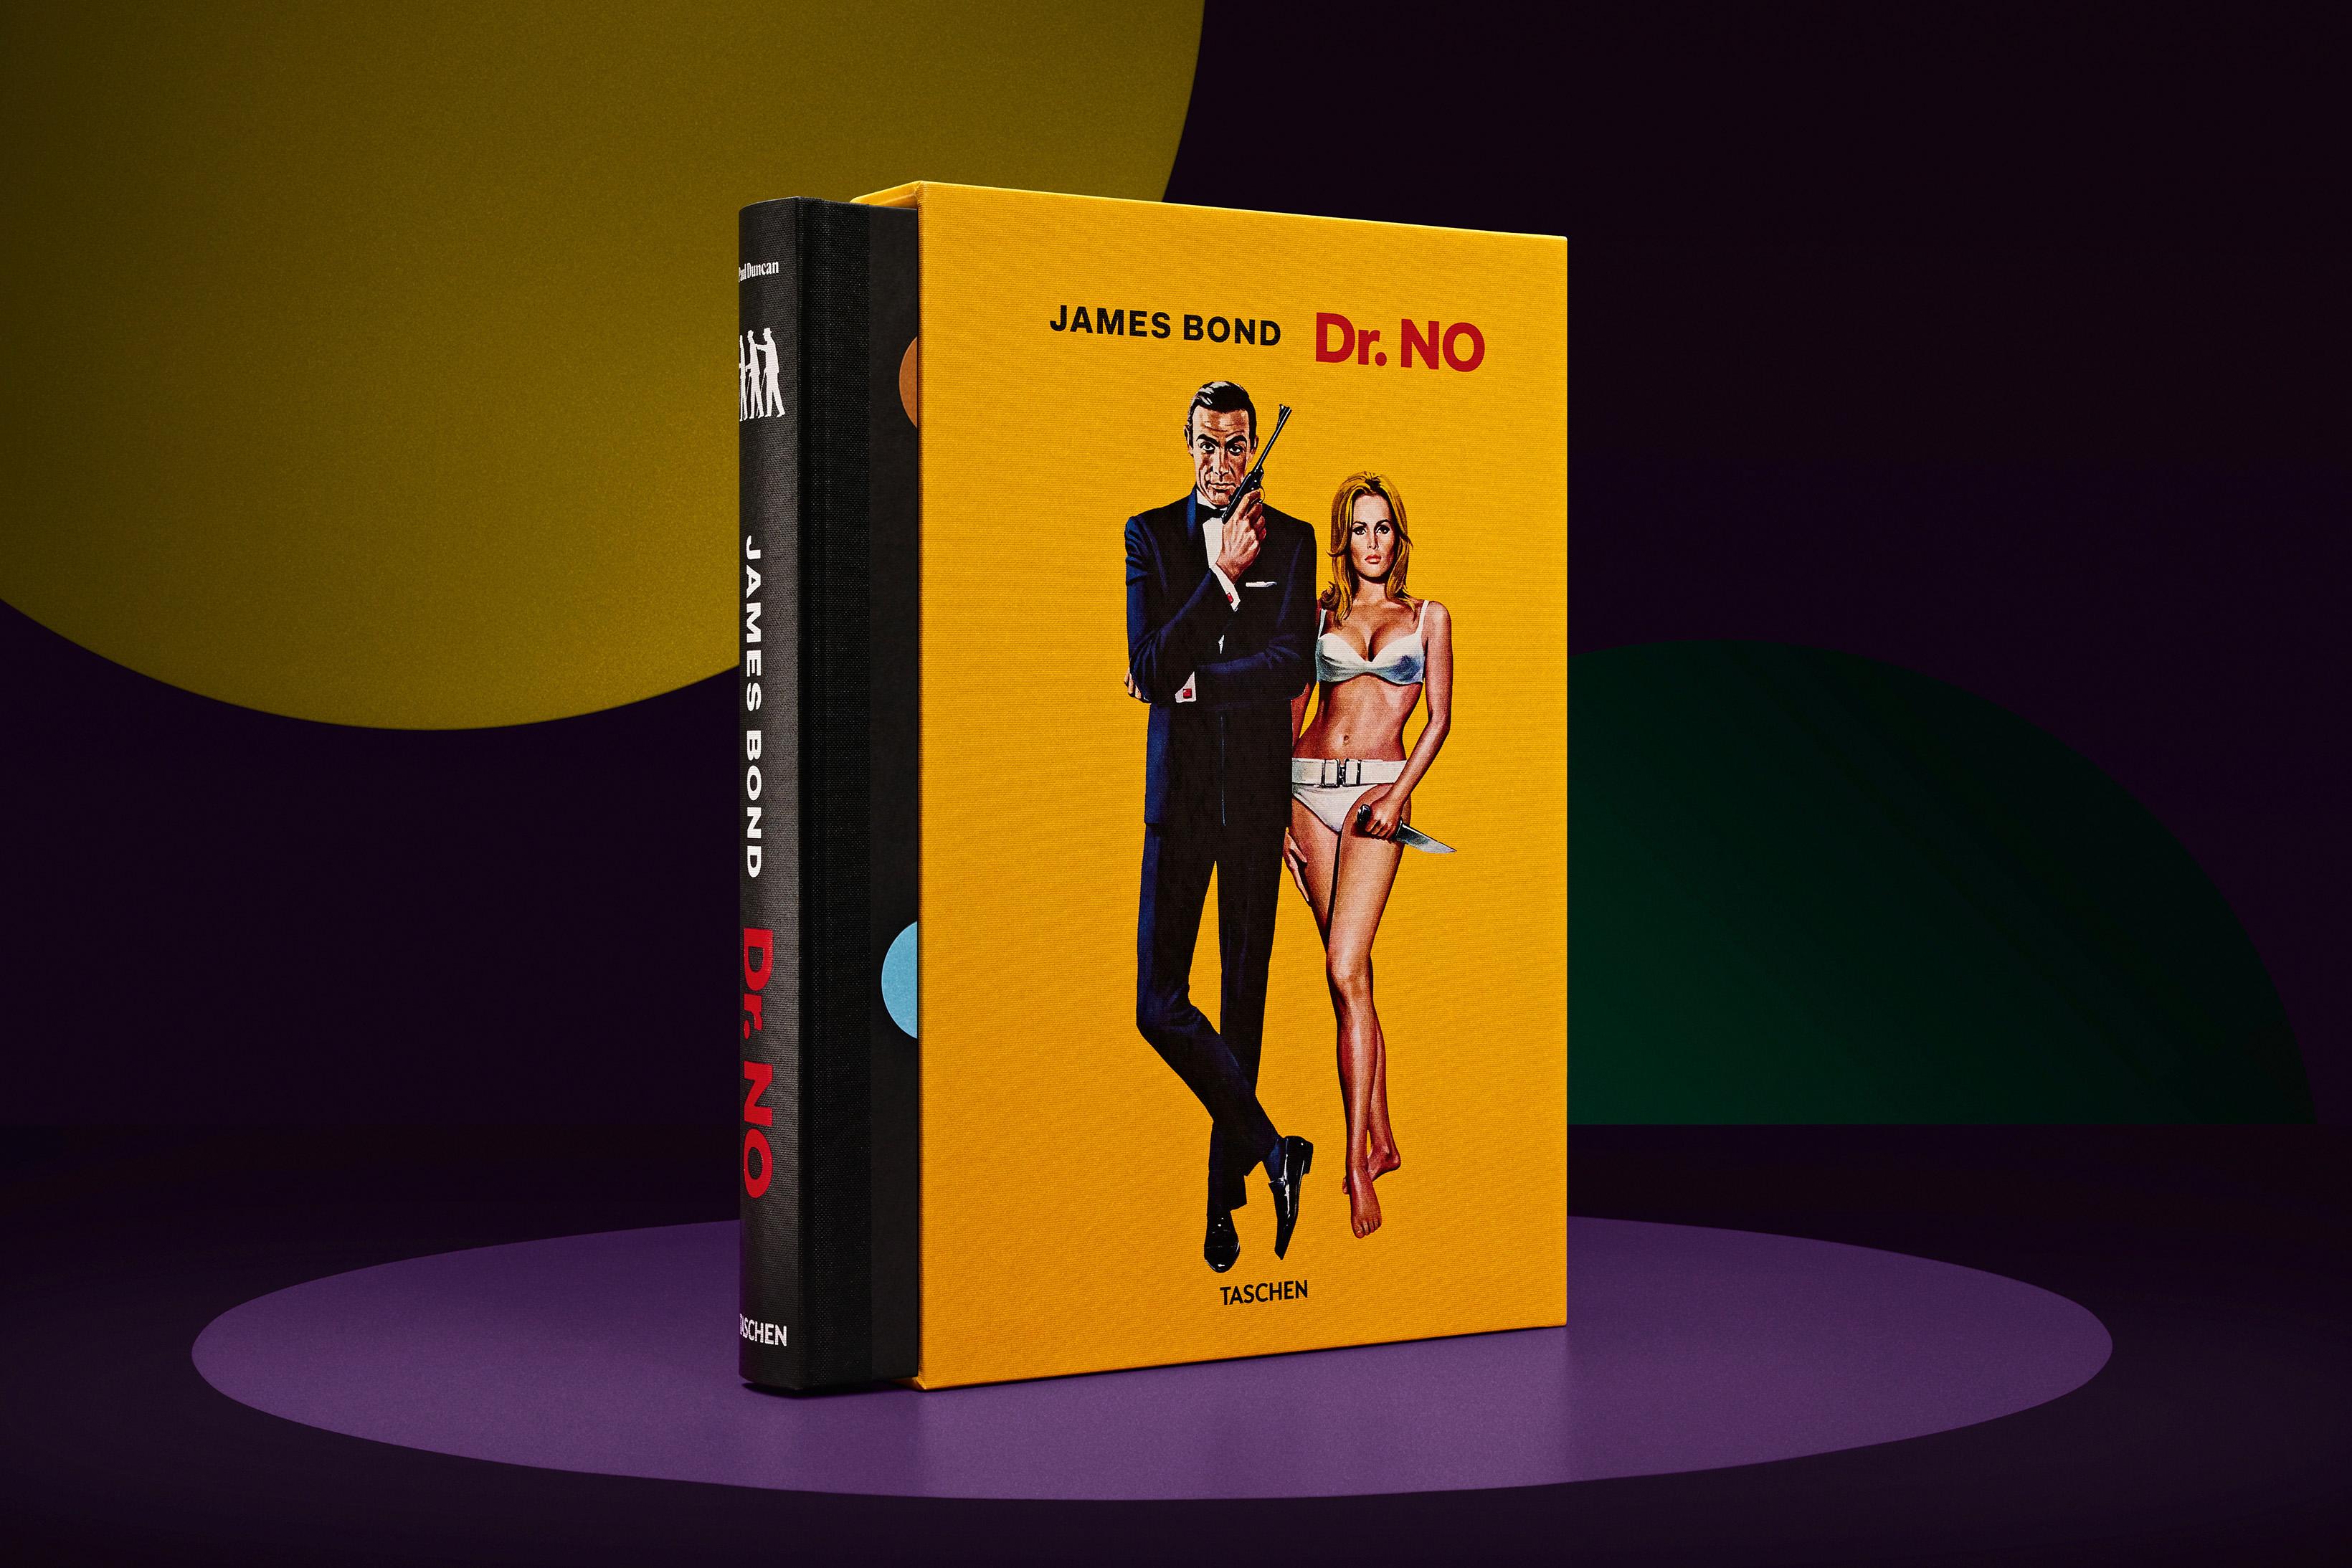 James Bond Dr. No. ‘Publicity Portrait’ 1962. Limited Ed ChromaLuxe Print & Book For Sale 5